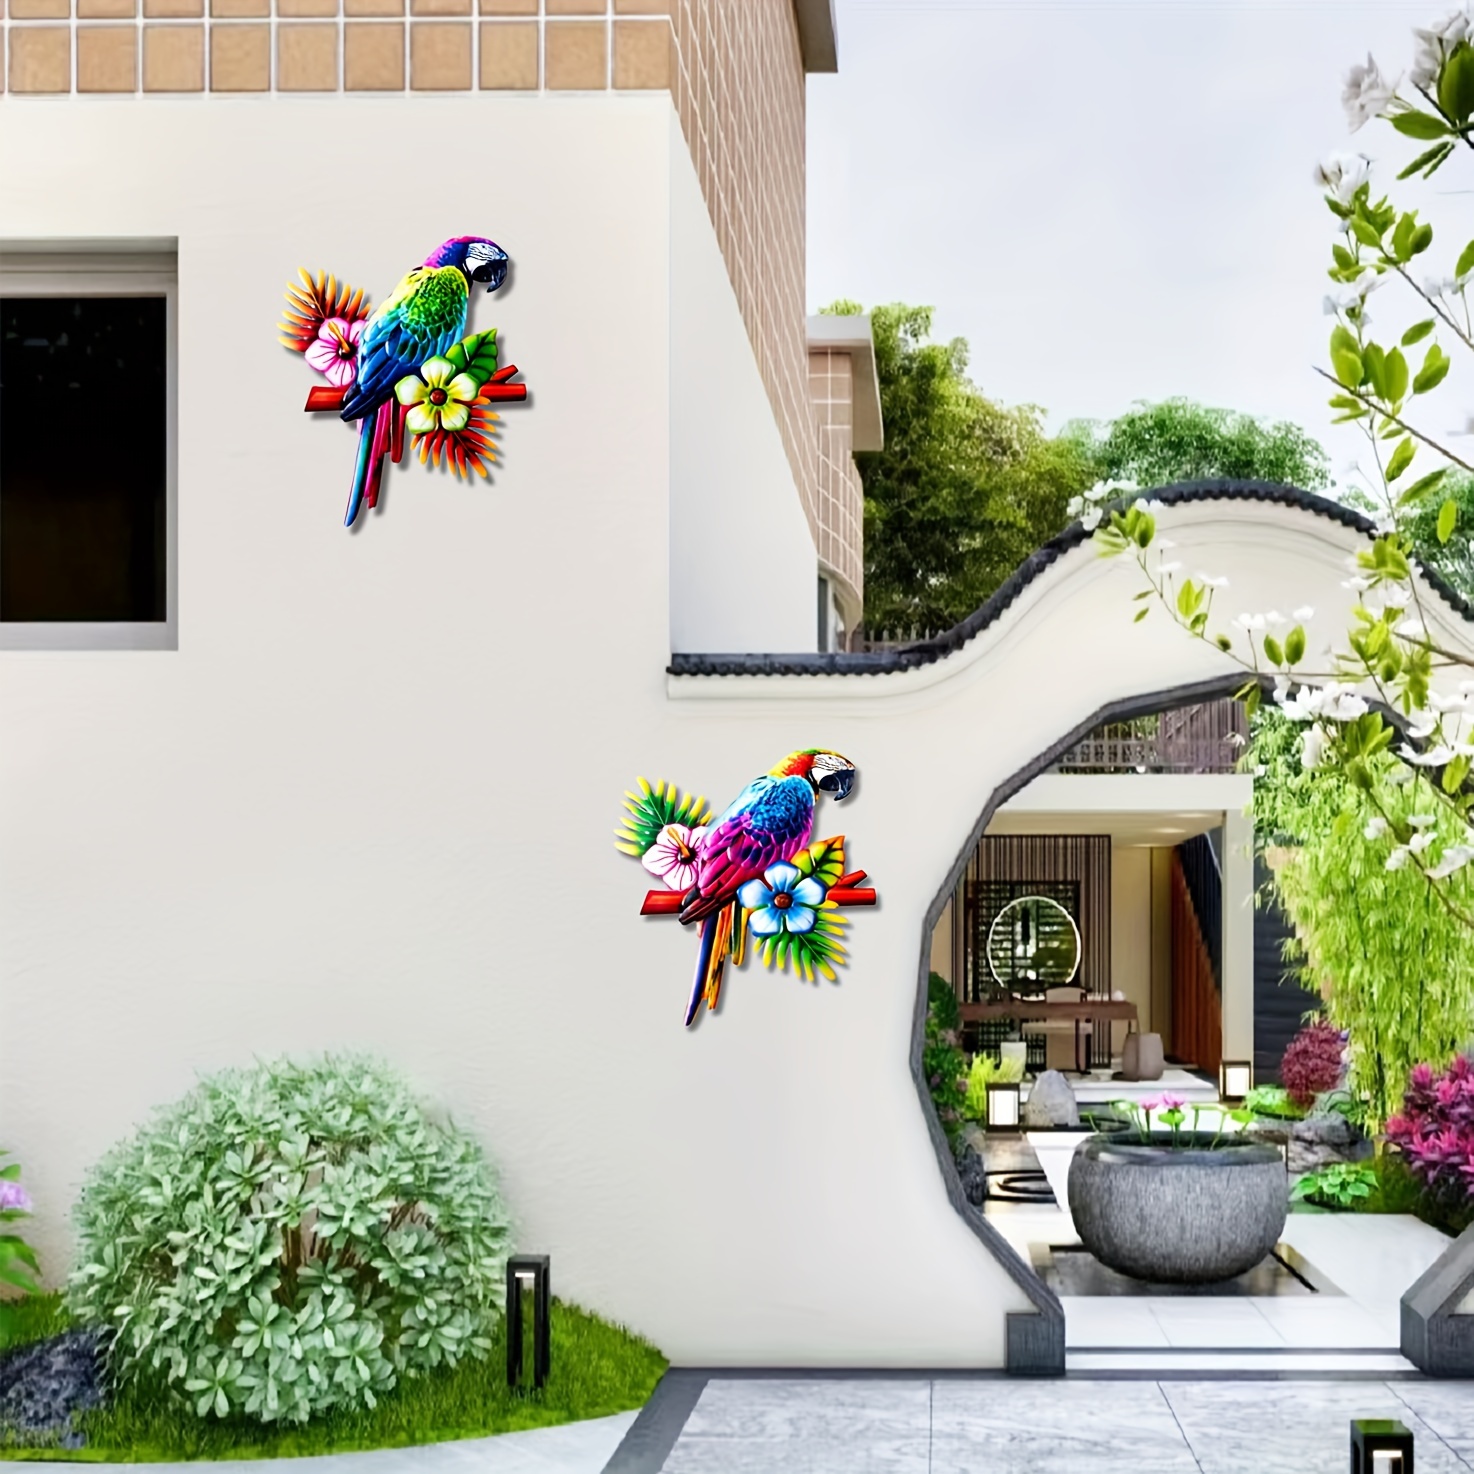 Decoración de pared de pájaros de metal, juego de 5 alas 3D, pájaros  colgantes pequeños, pájaros decorativos para interiores y exteriores,  hechos a